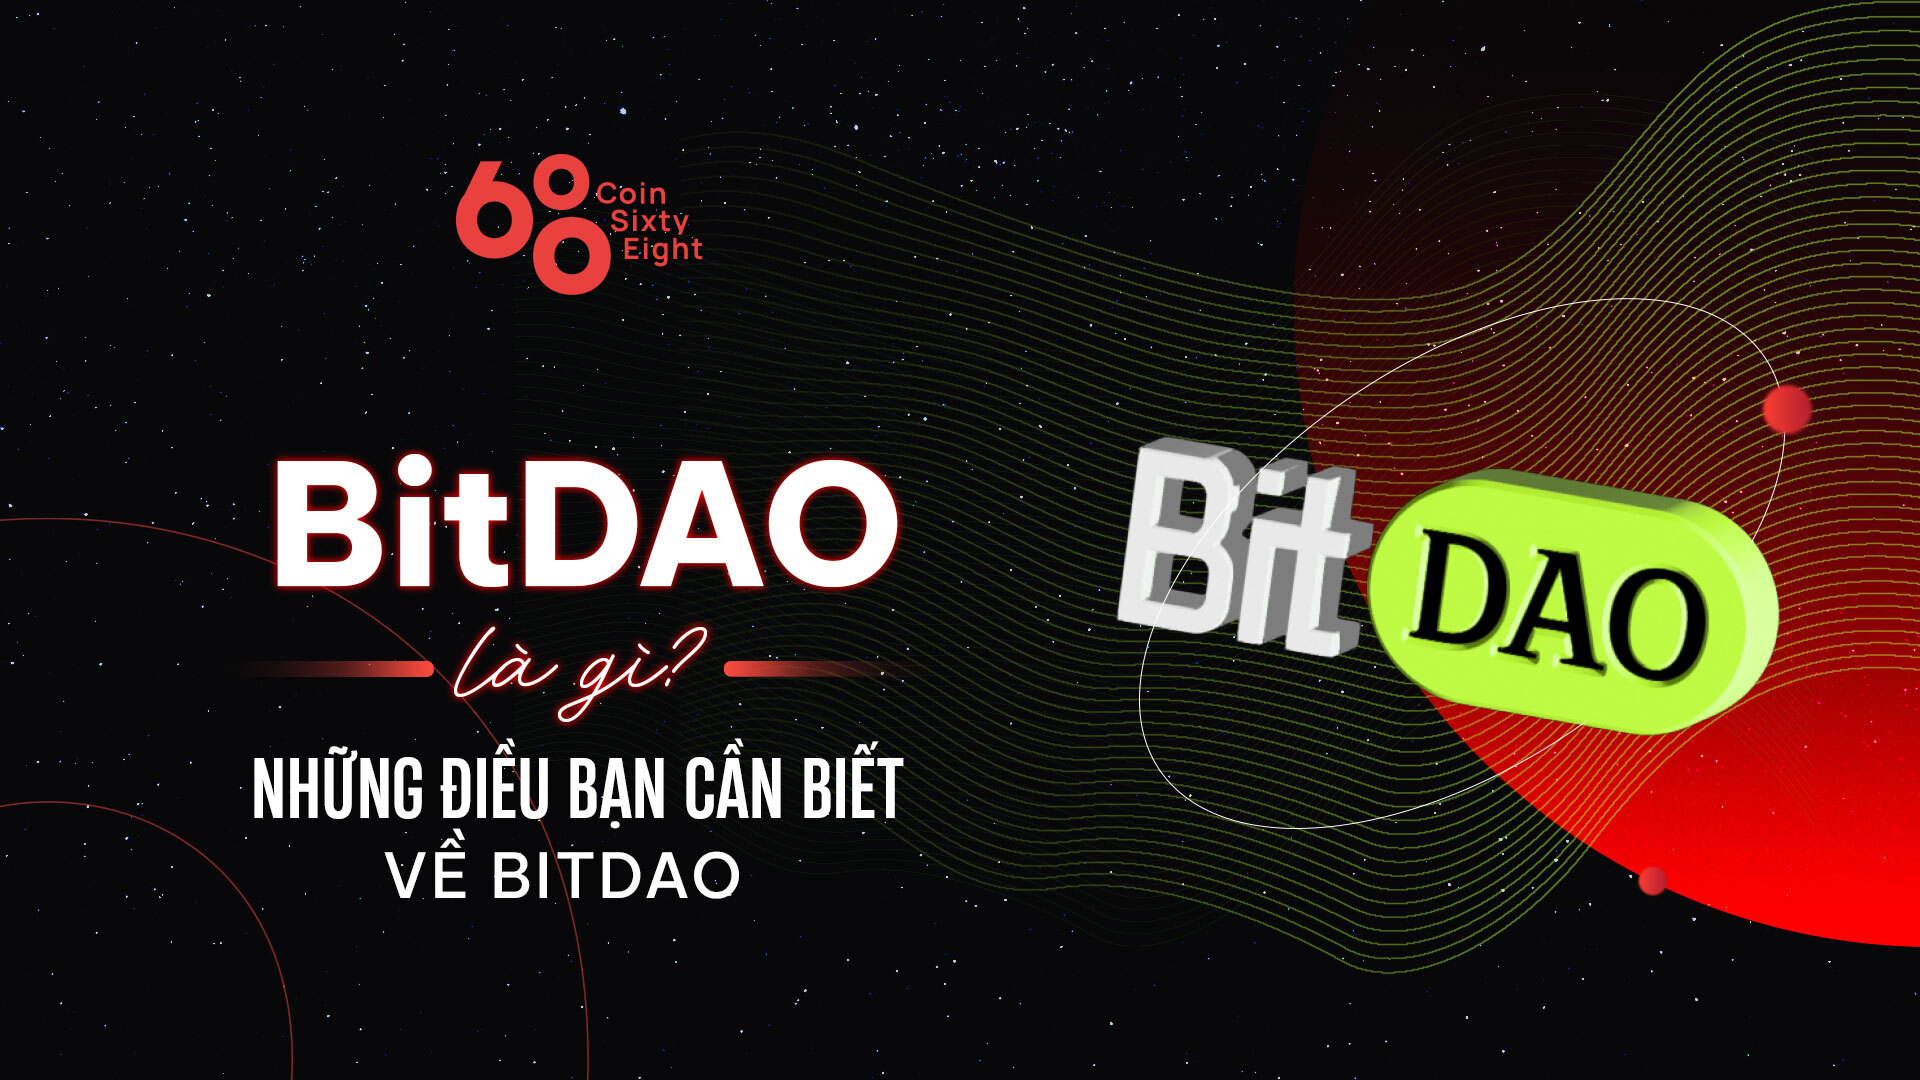 BitDAO là gì?